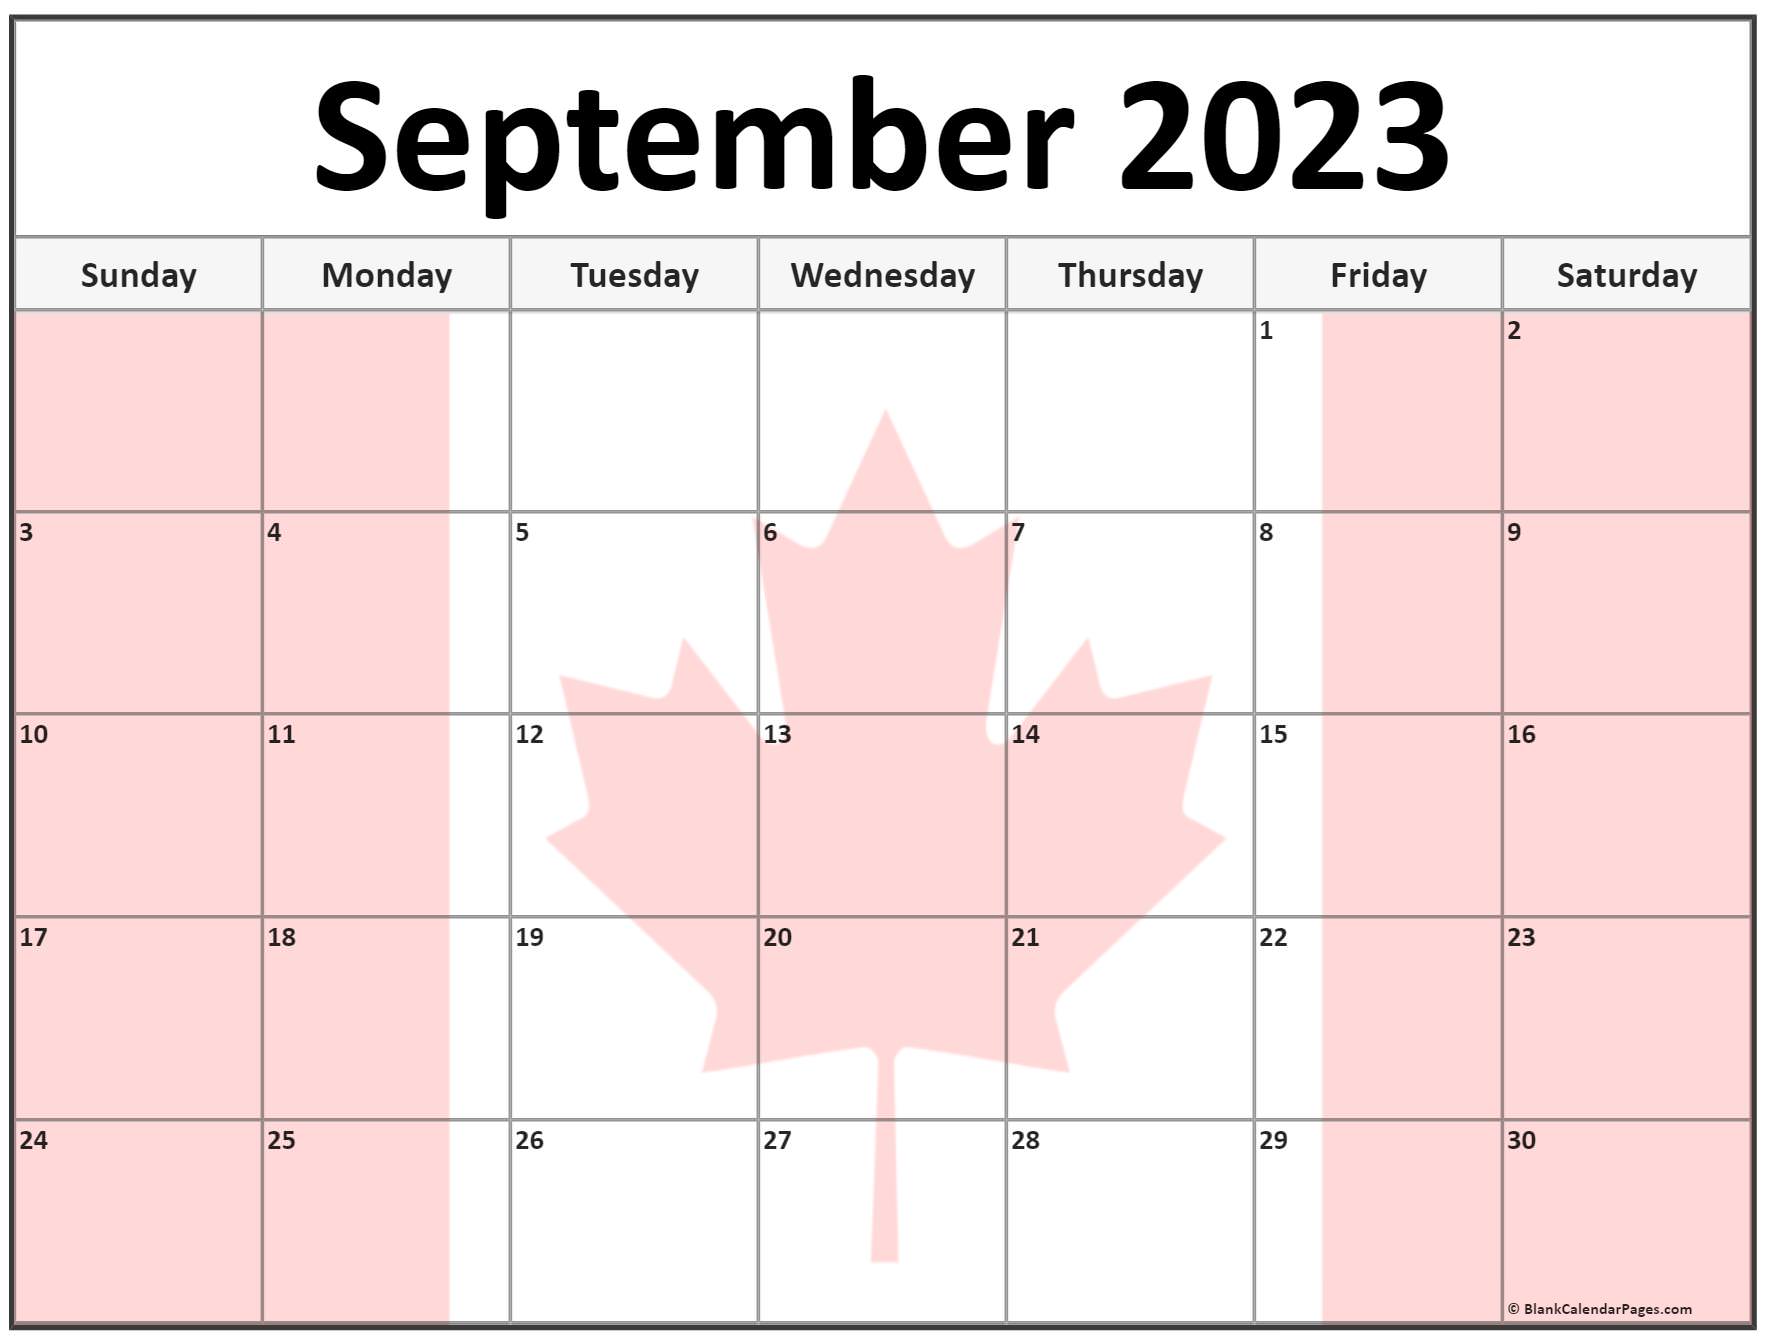 september-2023-calendar-flag-get-calendar-2023-update